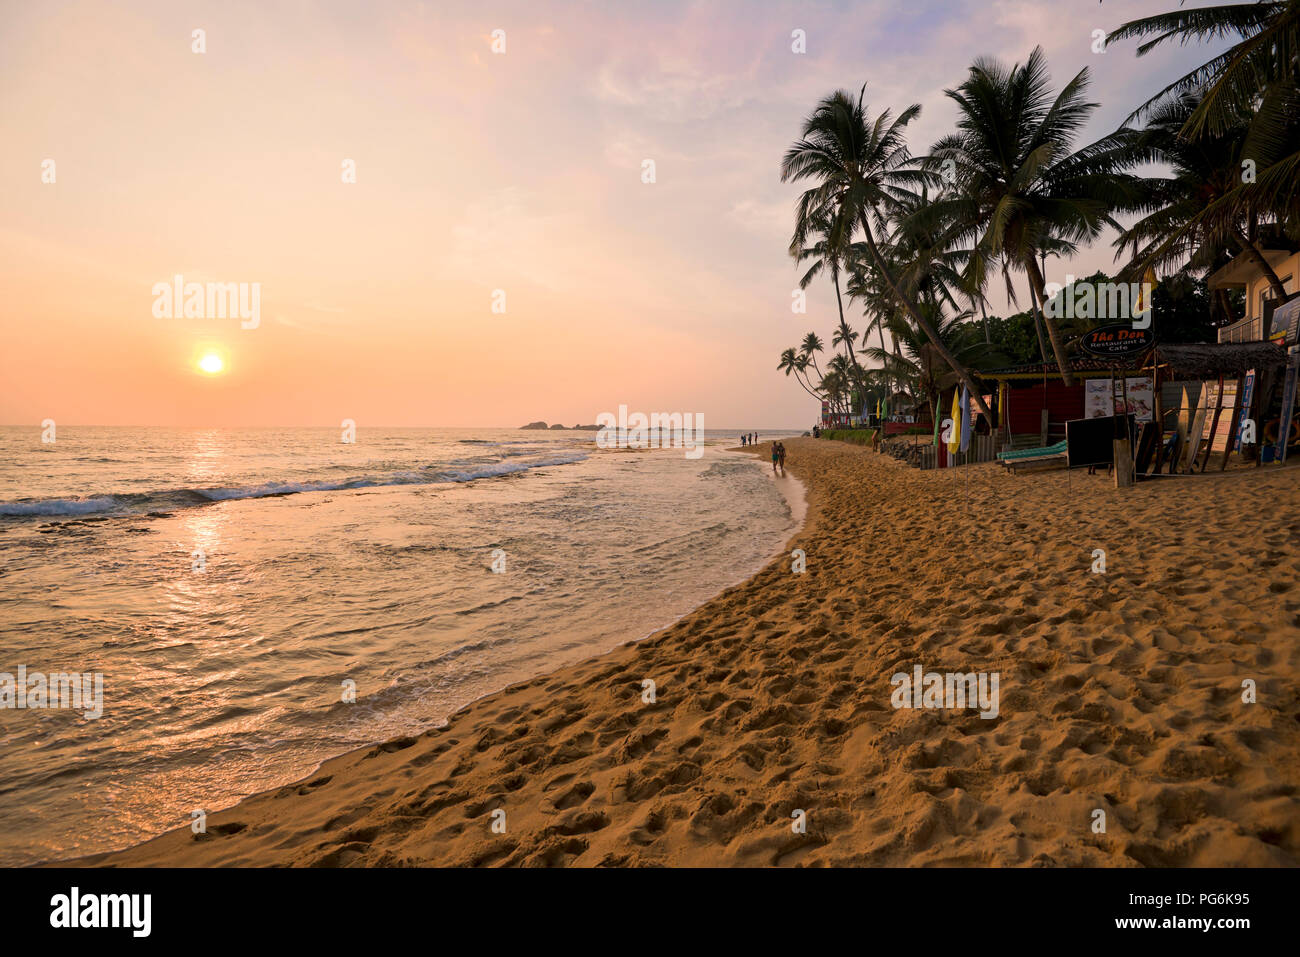 Horizontal view of the beach at sunset in Hikkaduwa, Sri Lanka. Stock Photo